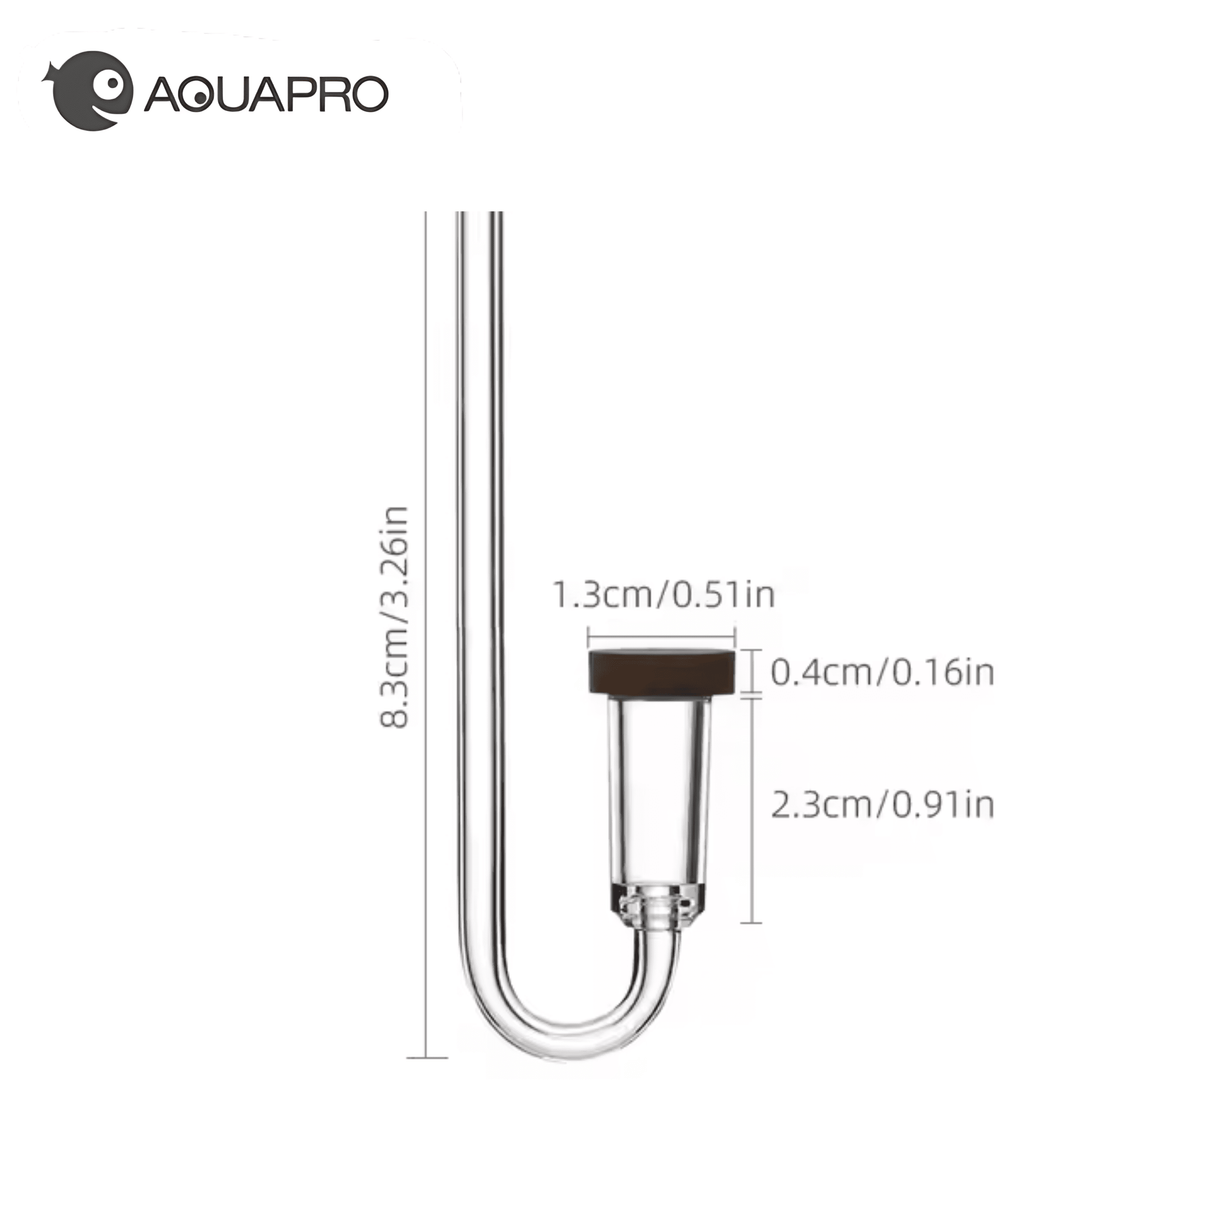 Aquapro Neo Co2 Diffuser - Small Dimensions